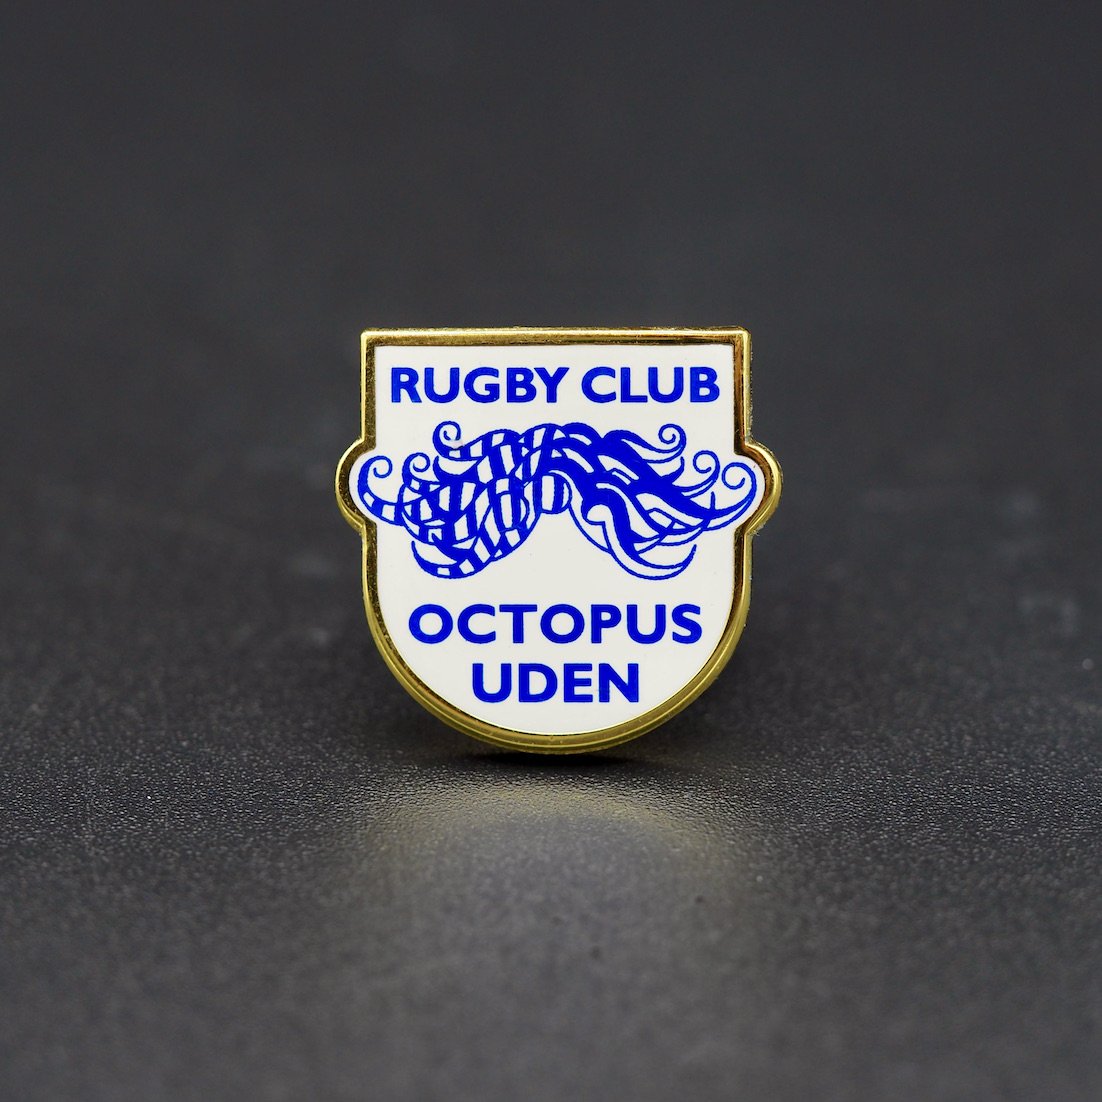 Rugby Club Octopus Uden, Pins met Pad-print